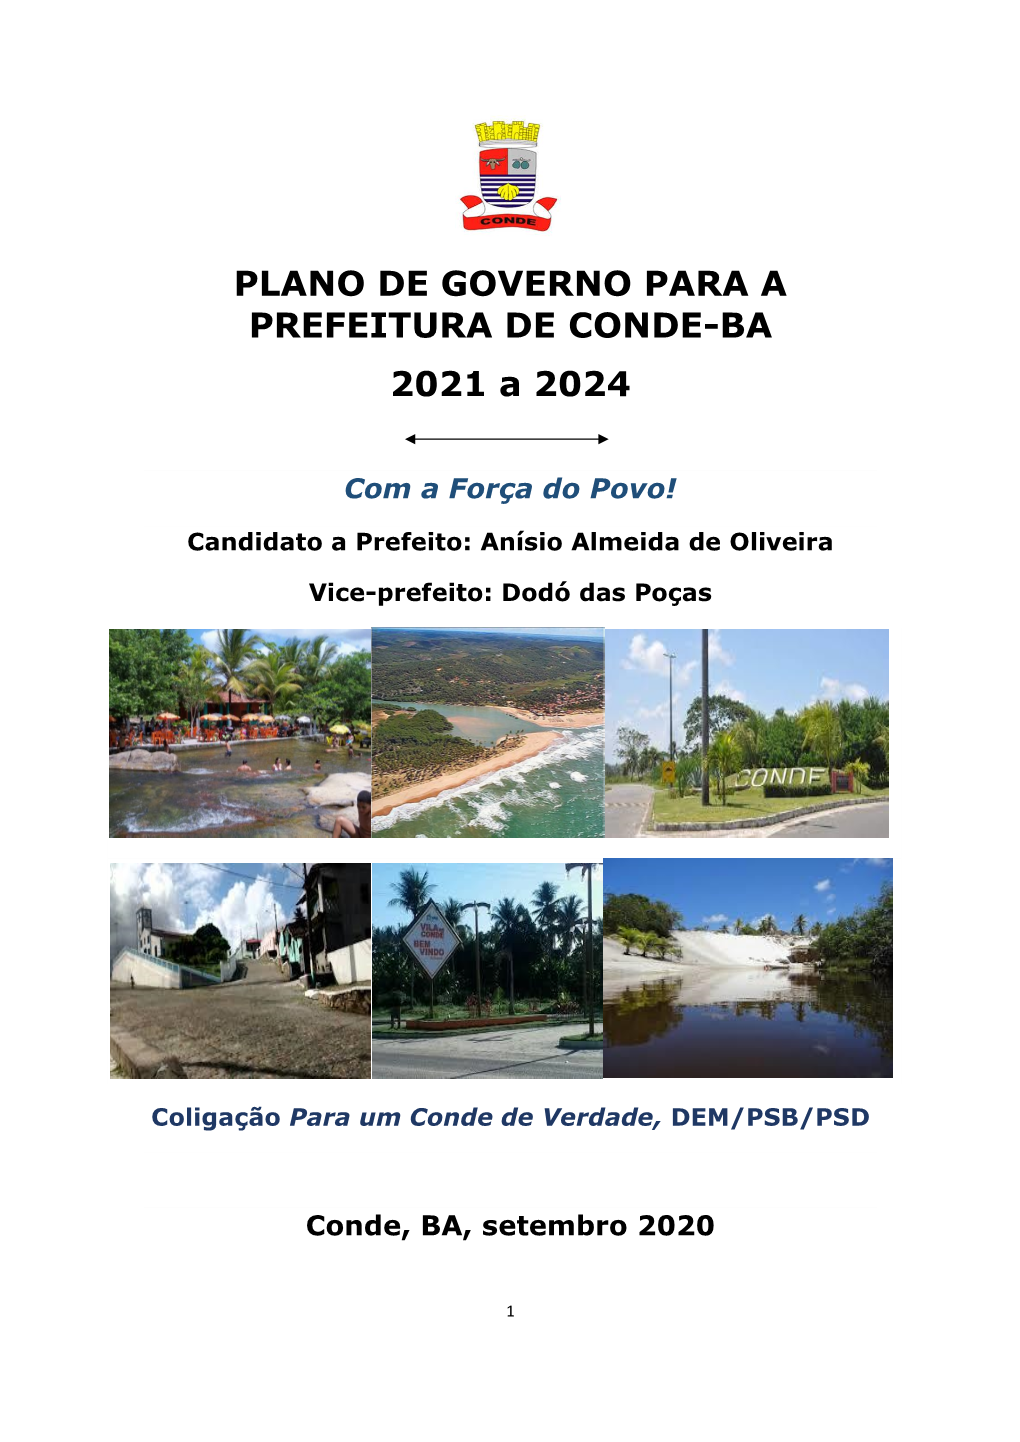 PLANO DE GOVERNO PARA a PREFEITURA DE CONDE-BA 2021 a 2024